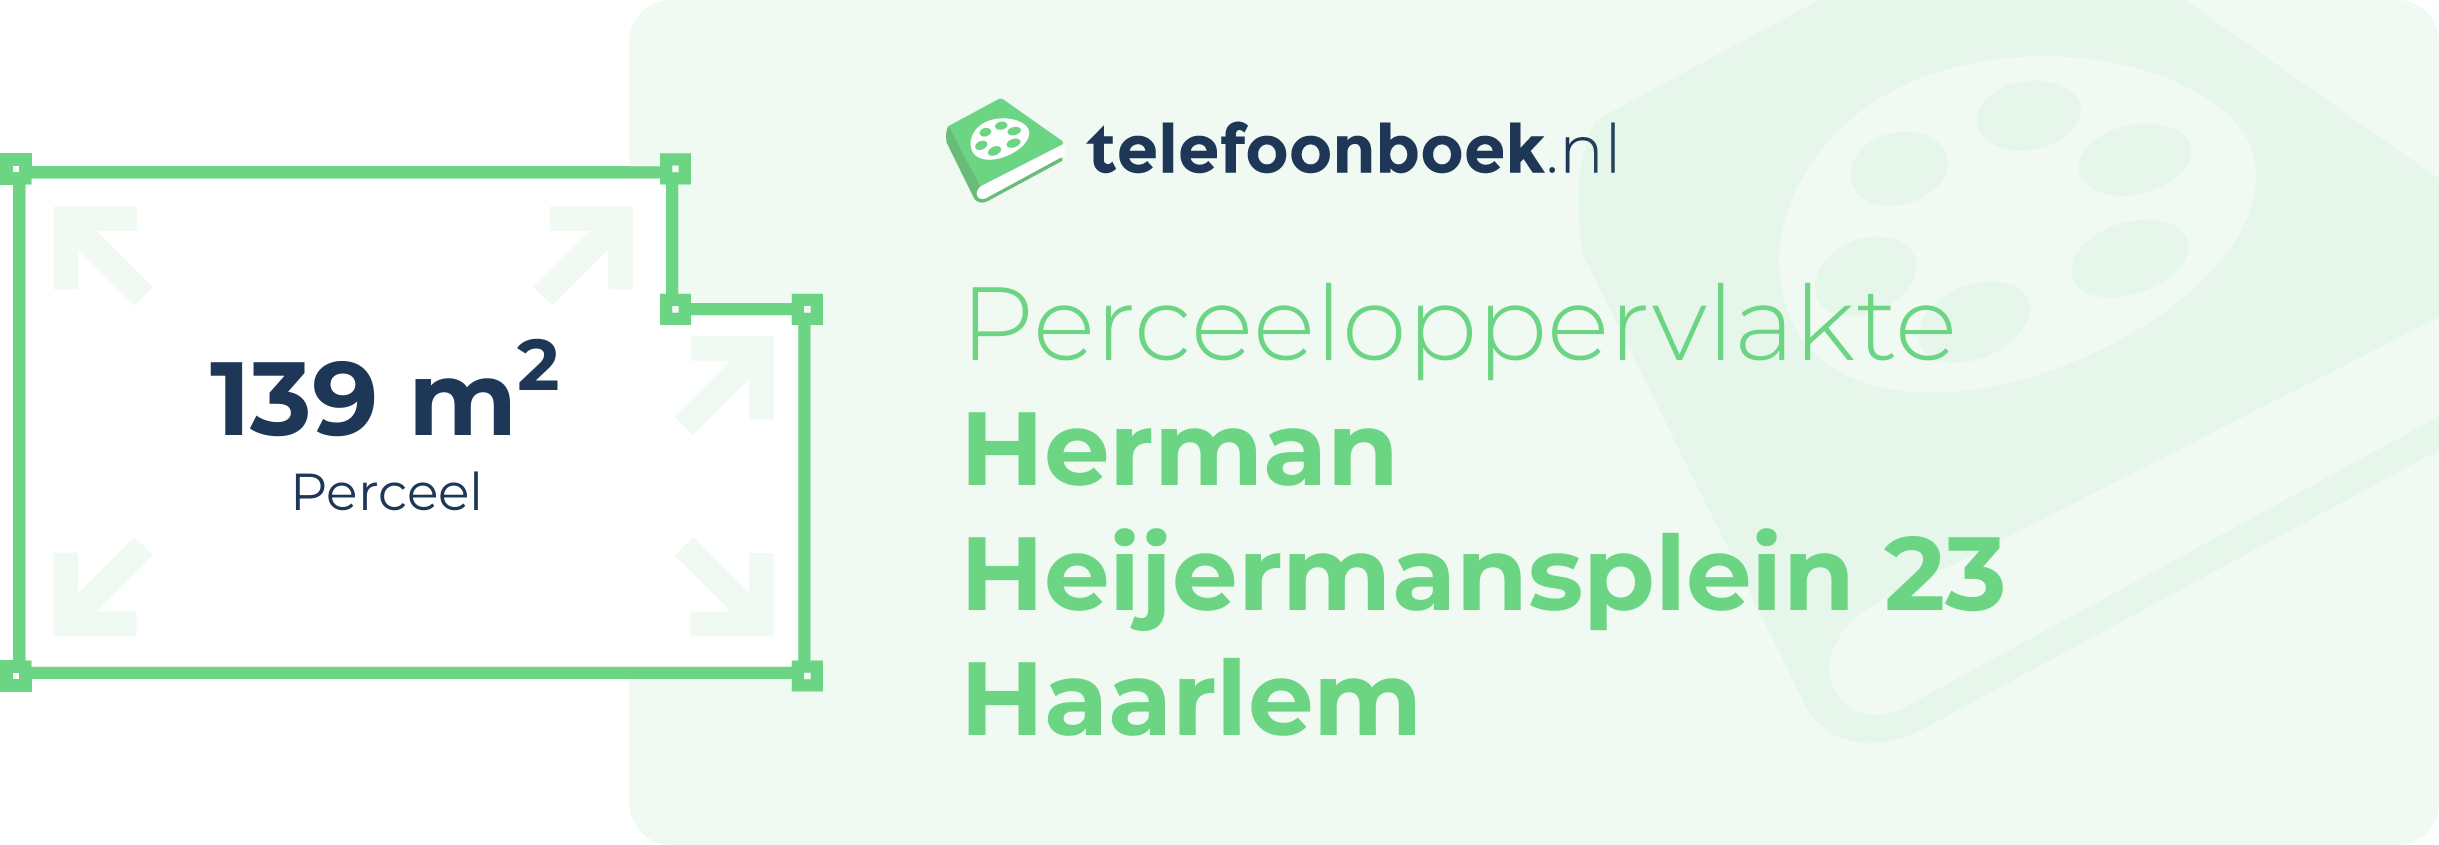 Perceeloppervlakte Herman Heijermansplein 23 Haarlem